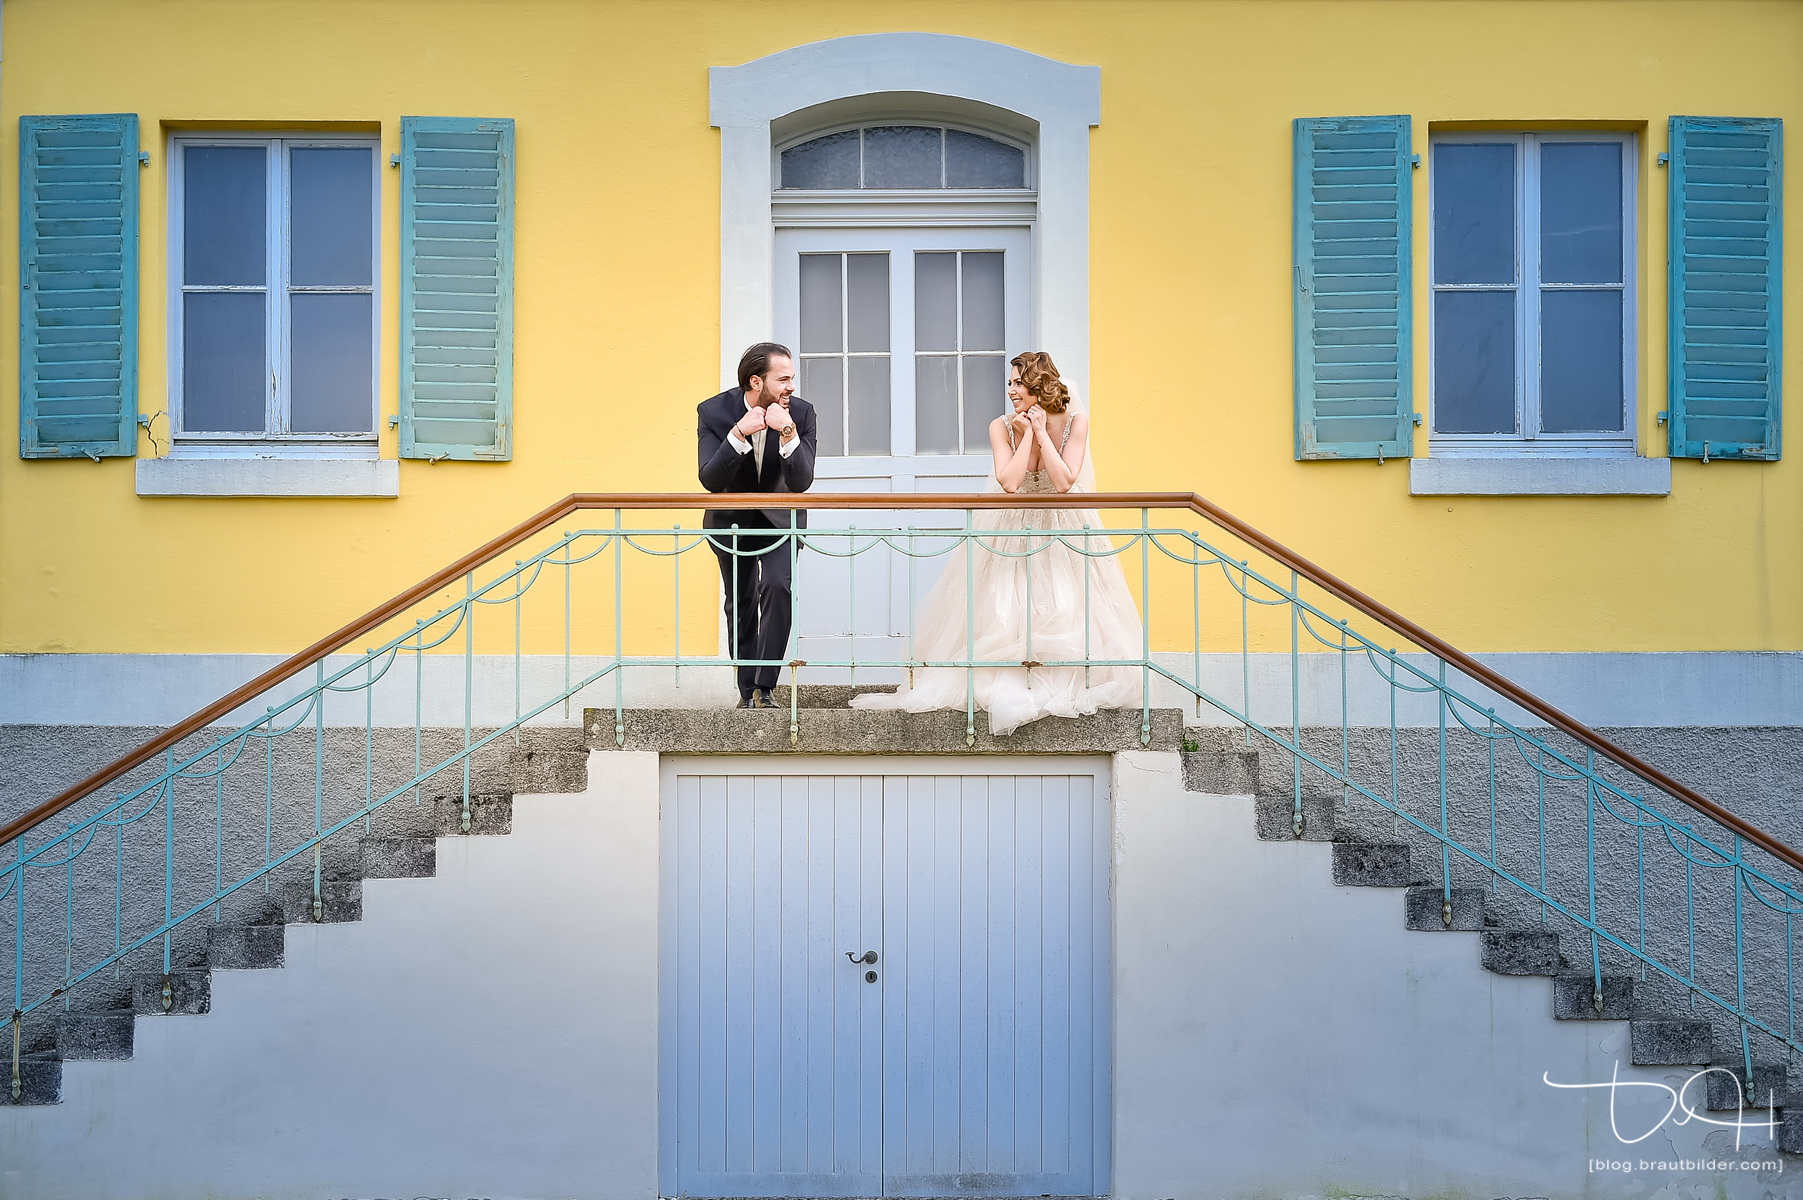 Modern wedding photography! Brautbilder von heute macht der Hochzeitsfotograf aus Nuernberg in der Orangerie Ansbach.